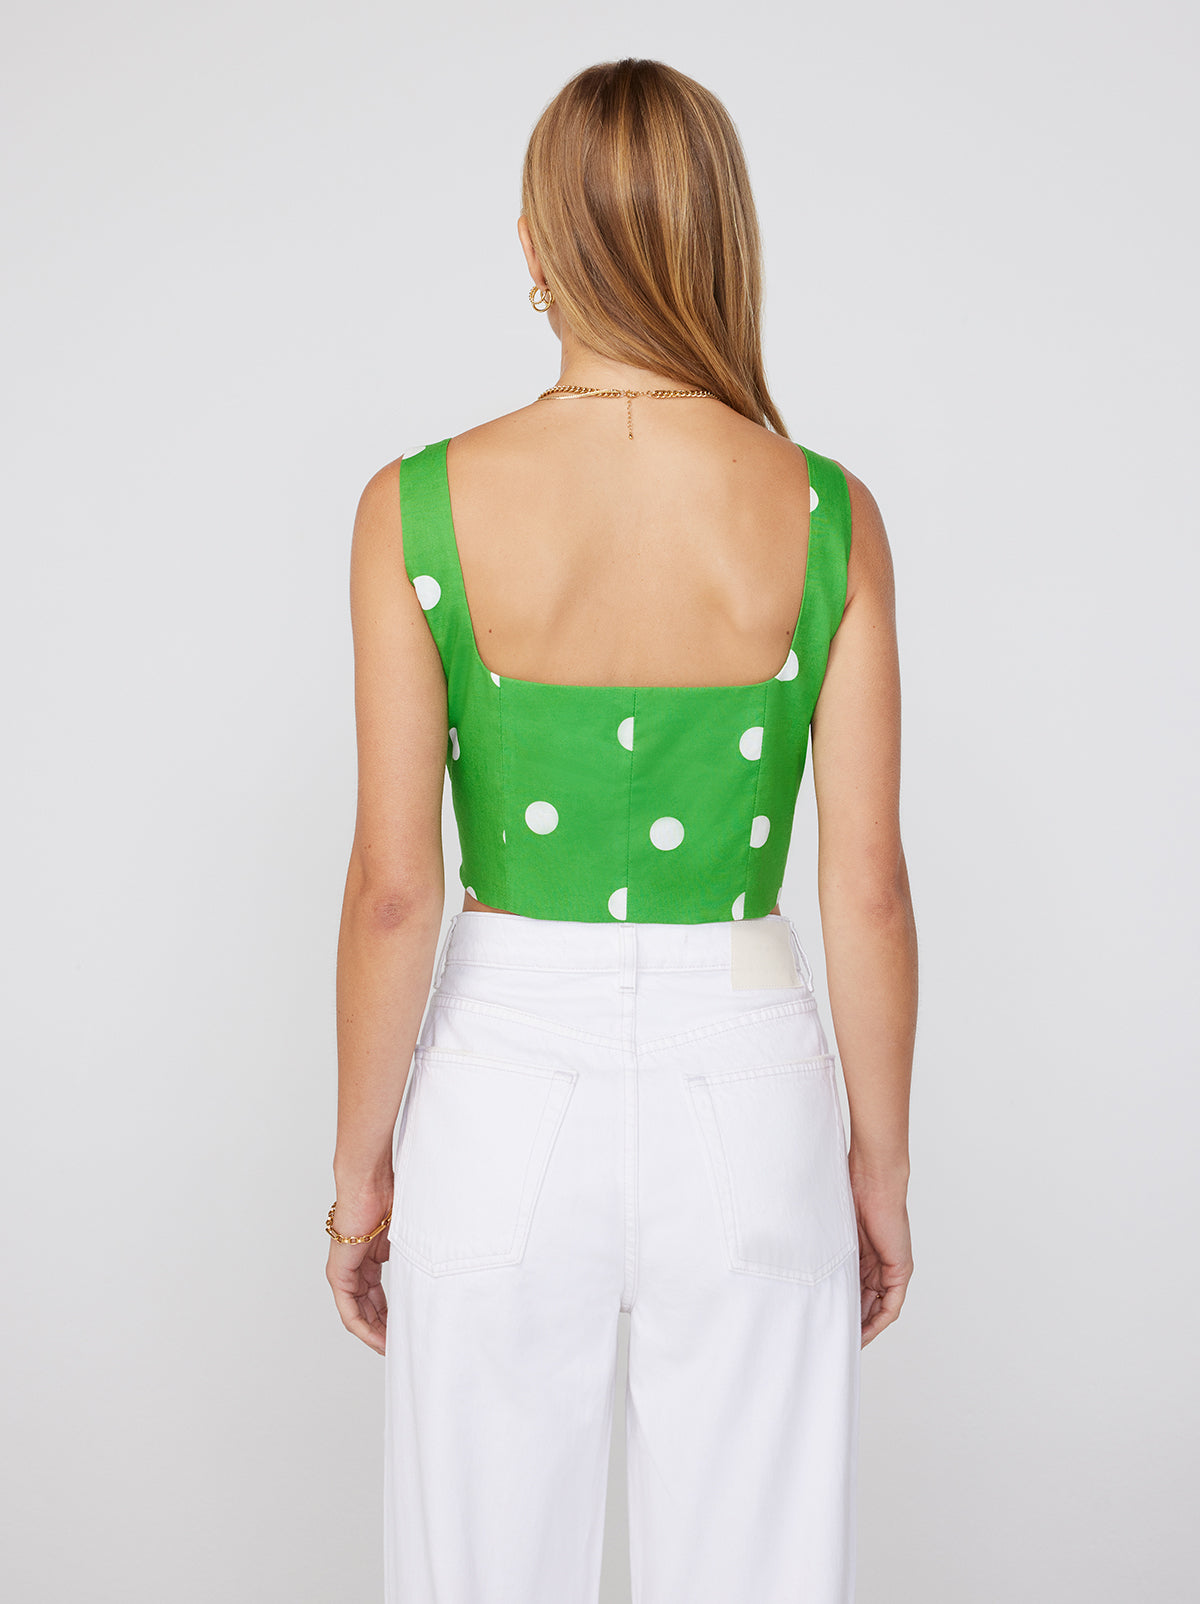 Ines Green Polka Dot Top By KITRI Studio